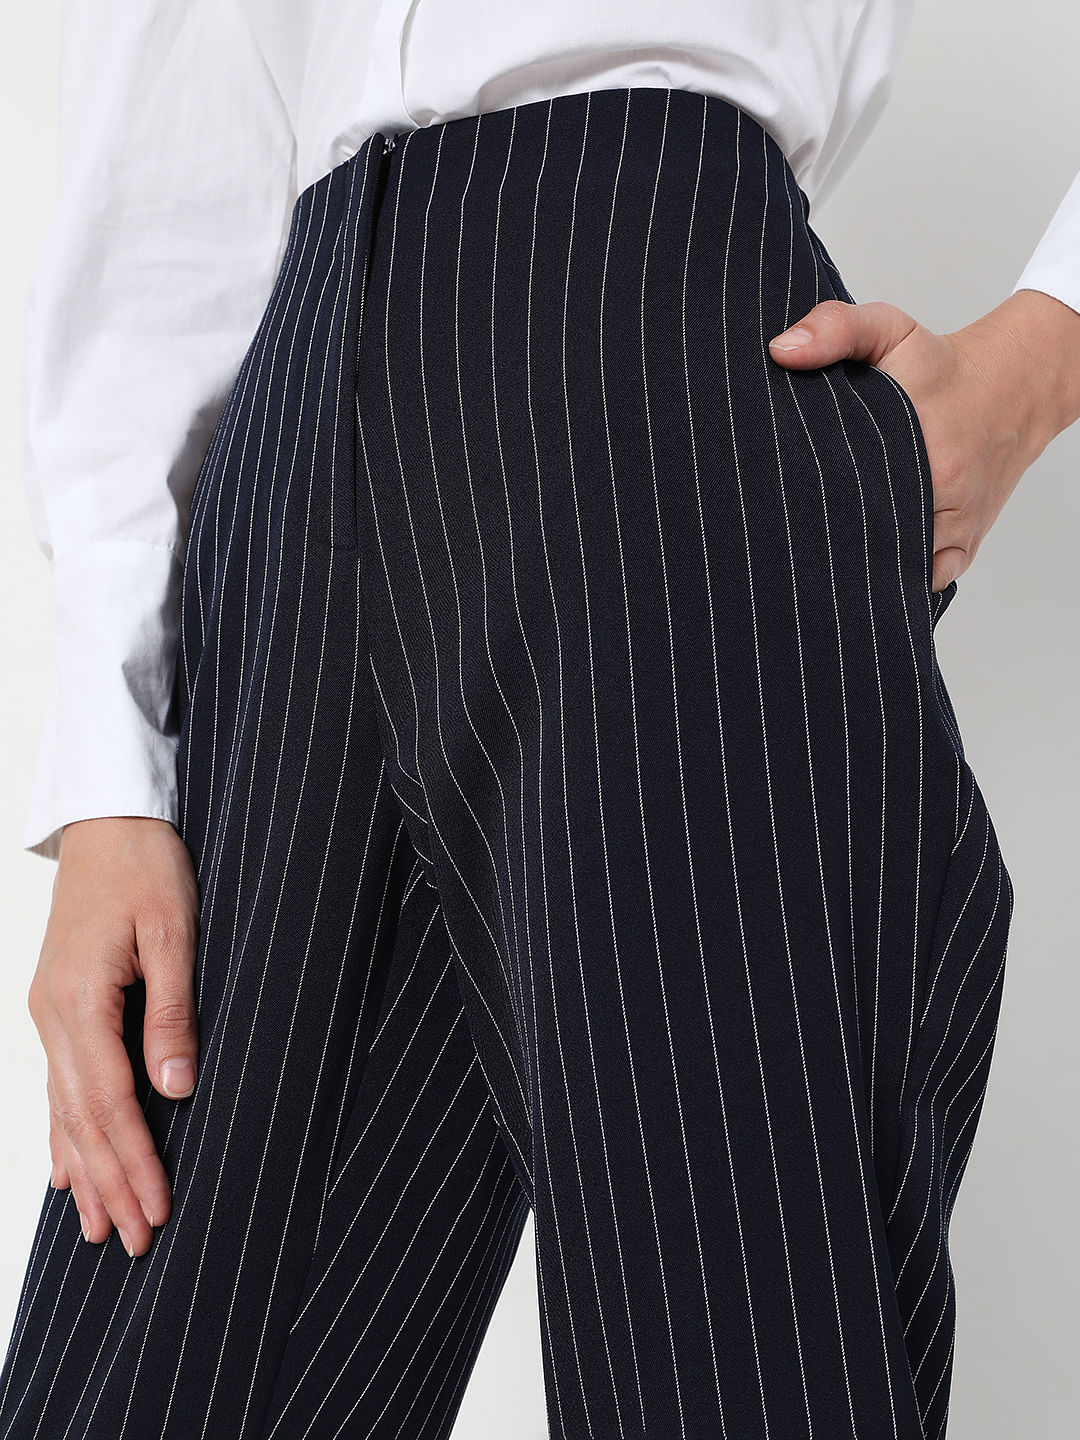 Glacial Blue Stripes Premium WoolBlend Pant For Men